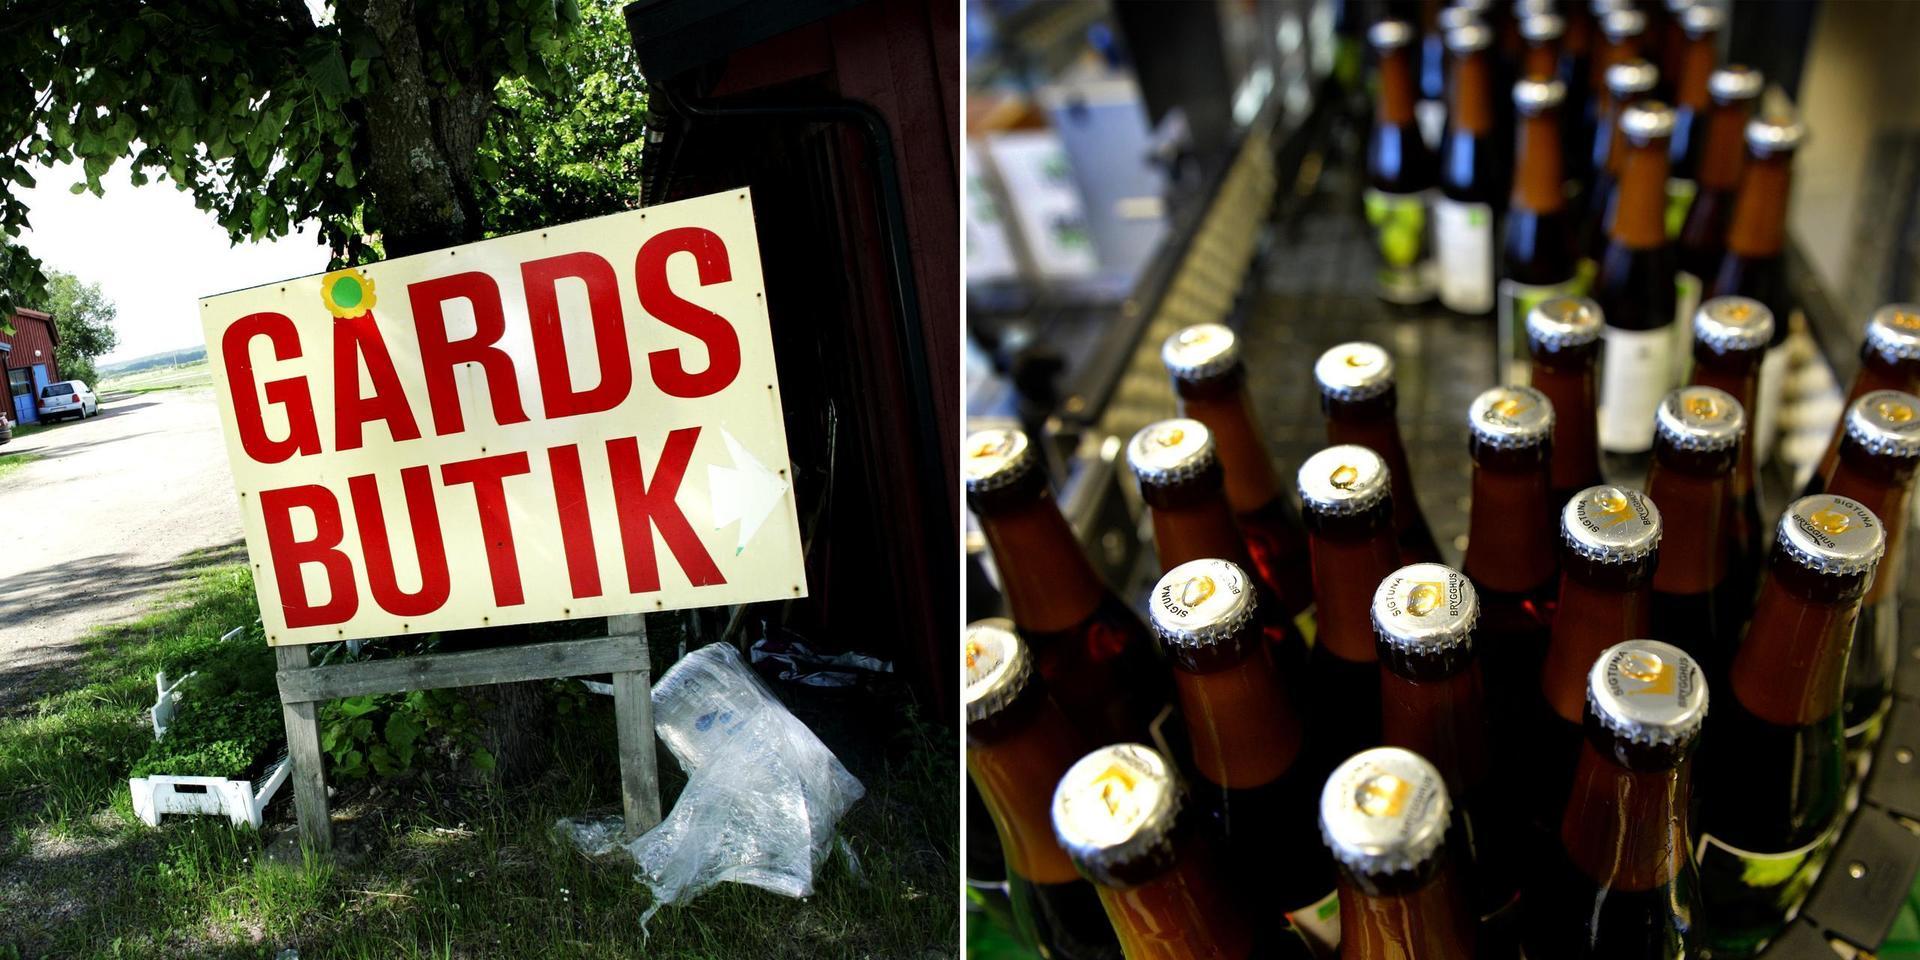 Centerpartiets förslag om att tillåta gårdsförsäljning av öl och vin handlar om att ge ännu bättre förutsättningar att driva företag på Sveriges landsbygd, men naturligtvis kan motsvarande försäljning även förekomma hos producenter inne i städerna, skriver debattörerna.